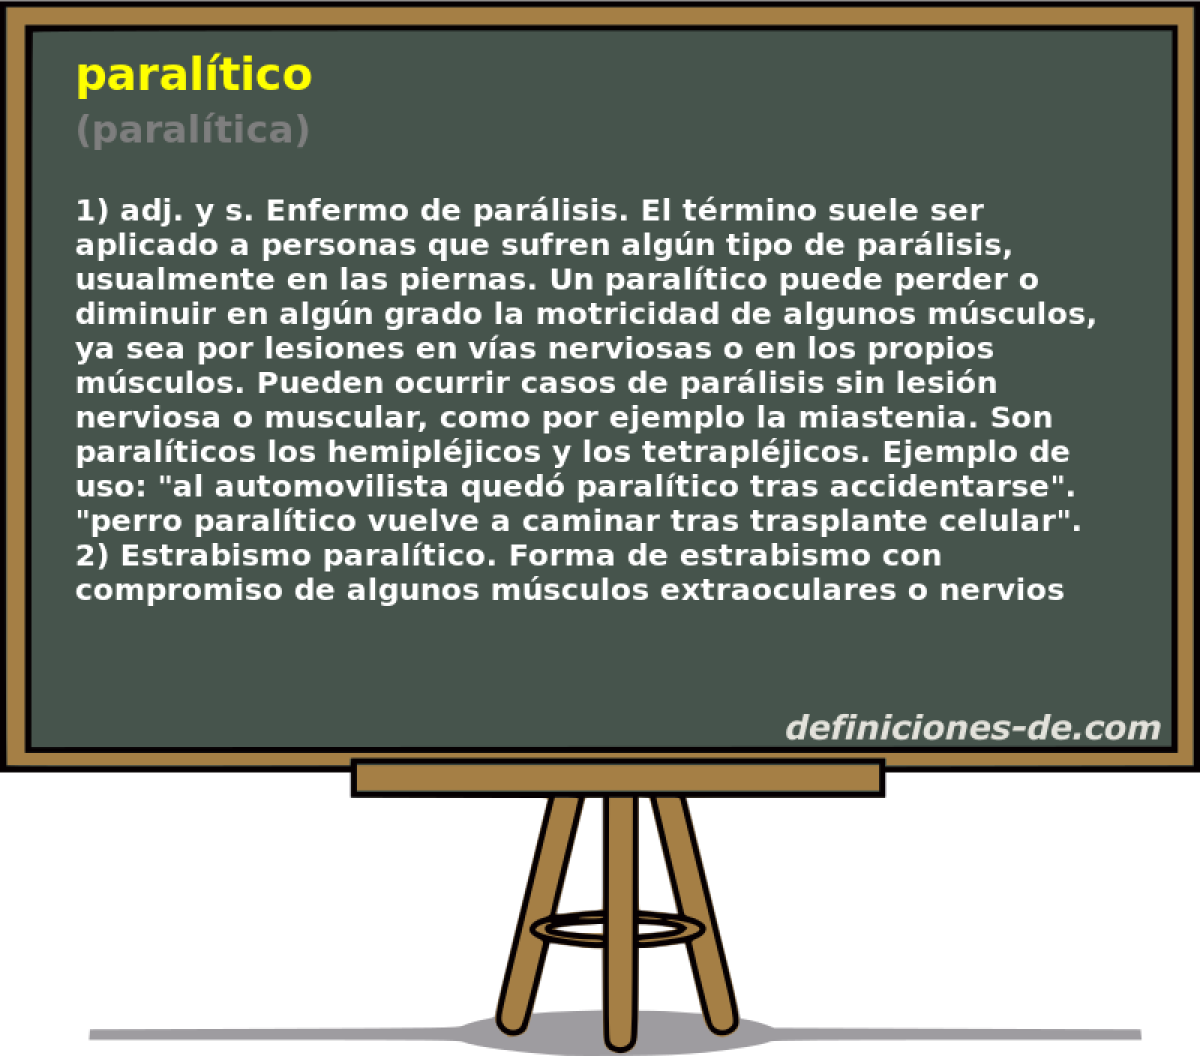 paraltico (paraltica)